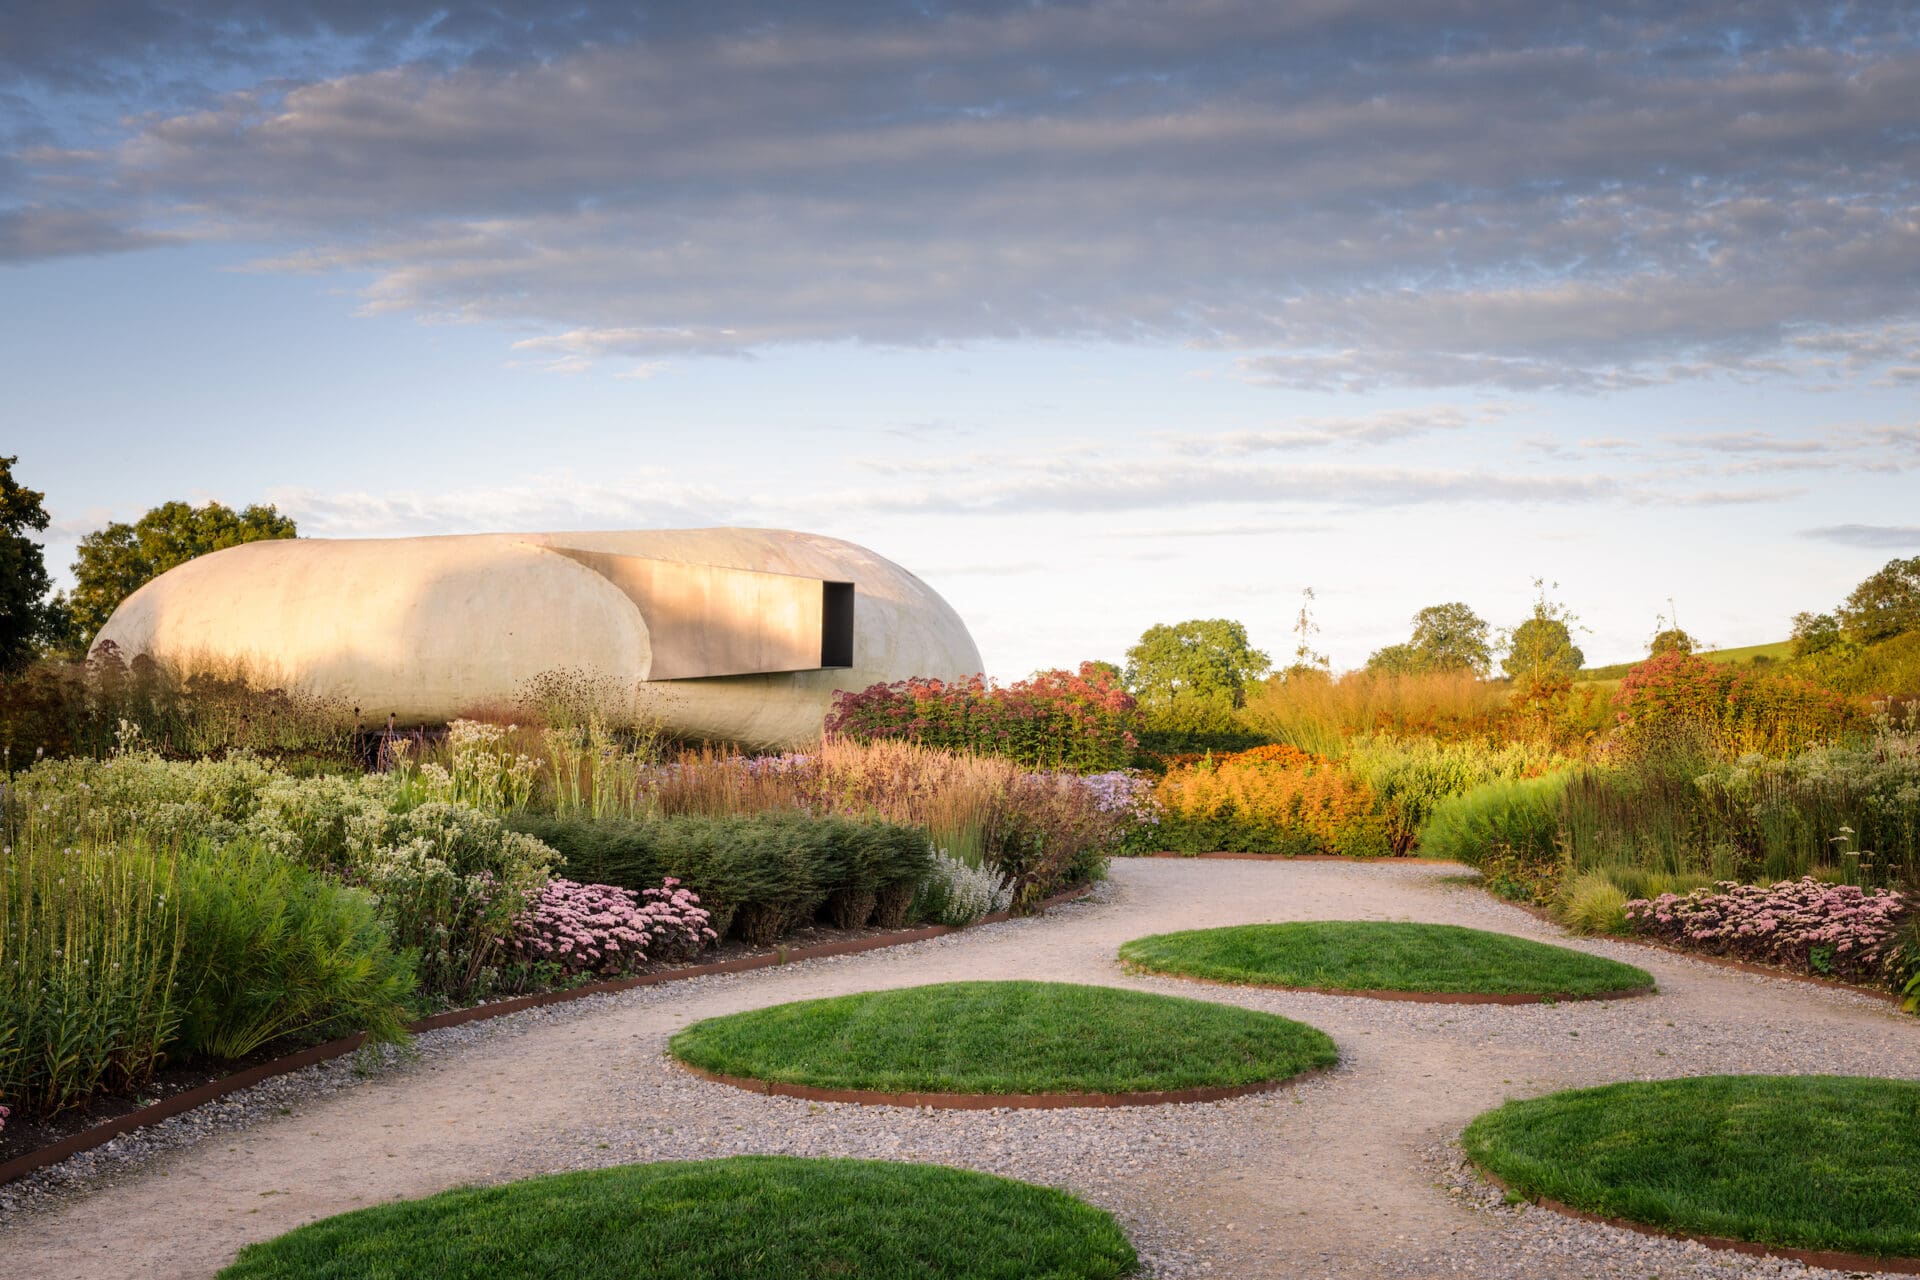 Hauser & Wirth Somerset | The pavilion in the Piet Oudolf designed garden